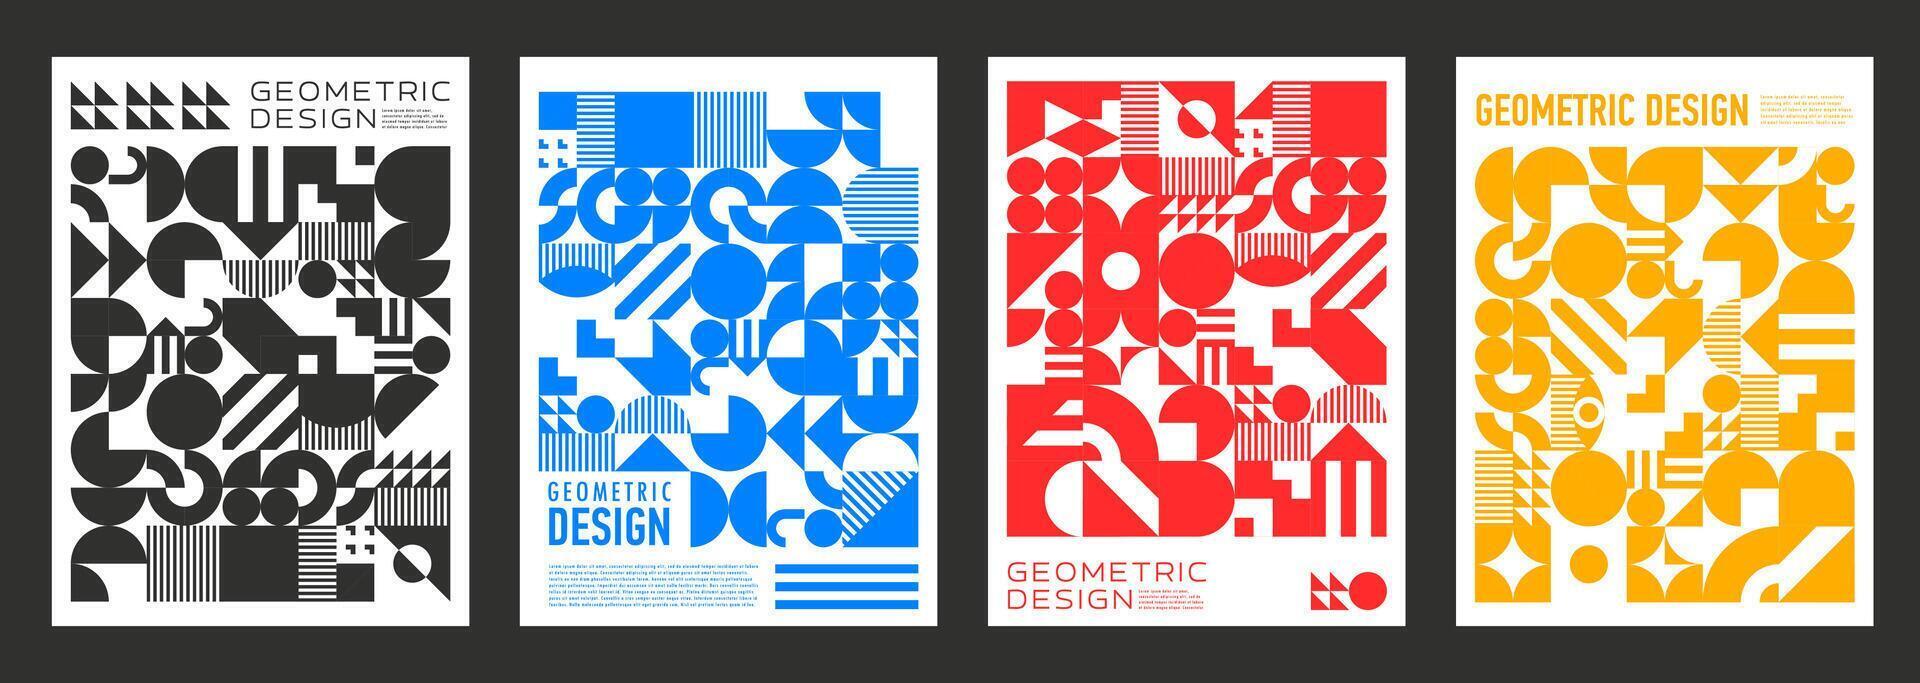 duotone abstrakt modern geometrisk mönster posters vektor